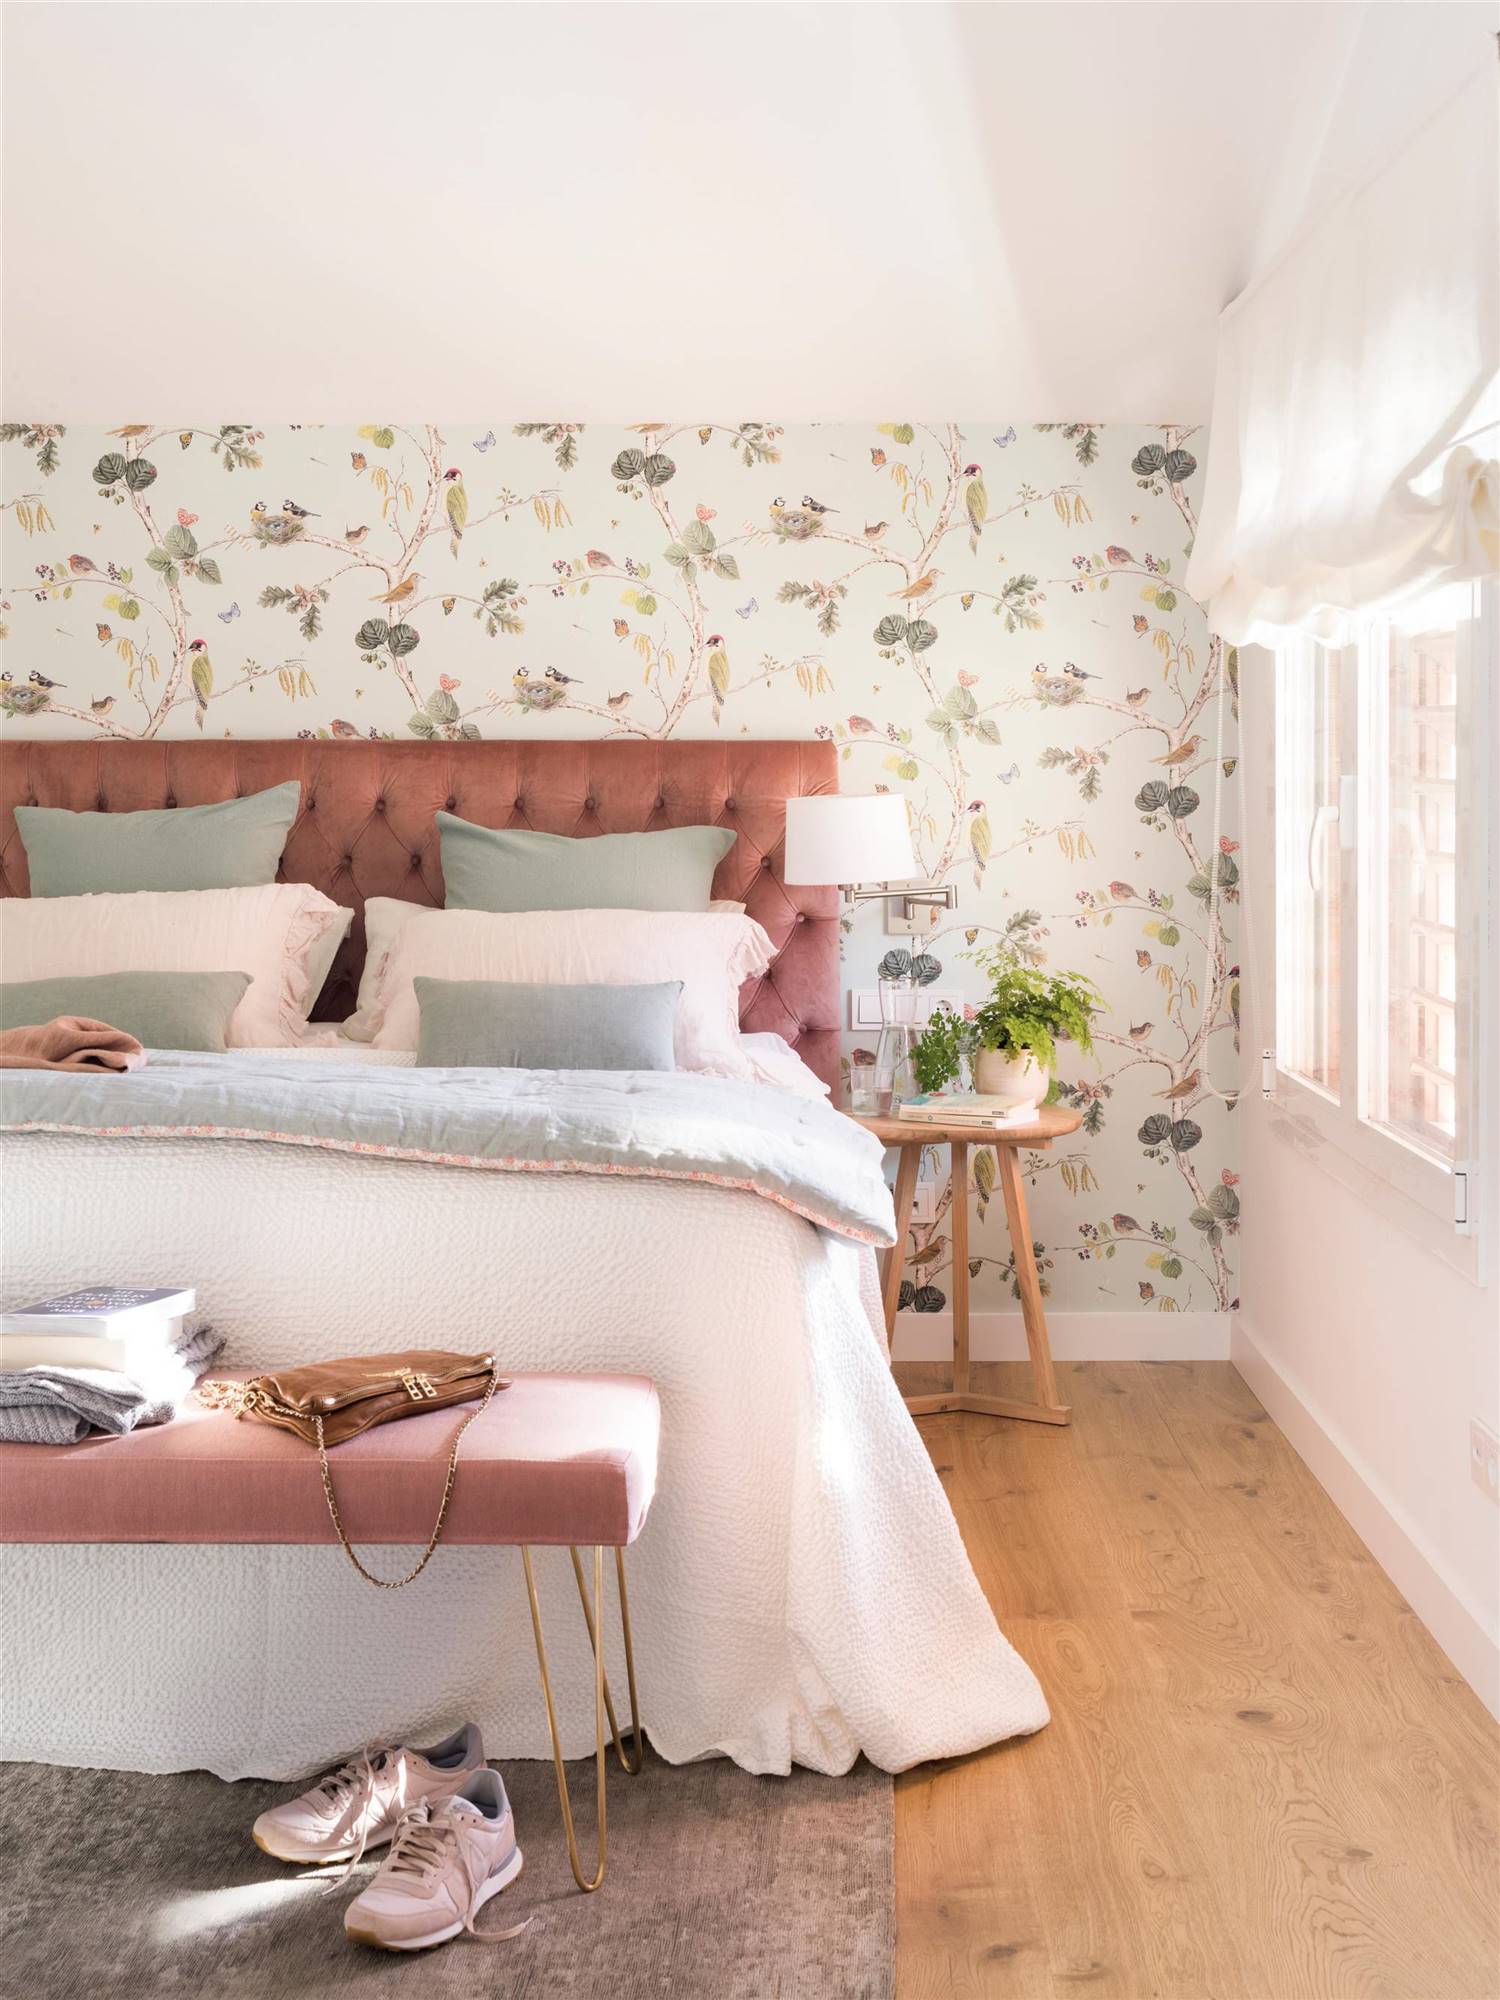 Dormitorio con cabecero de terciopelo rosa, papel pintado floral, mesa auxiliar de madera como mesita de noche y banco de terciopelo rosa a los pies de la cama 00524511